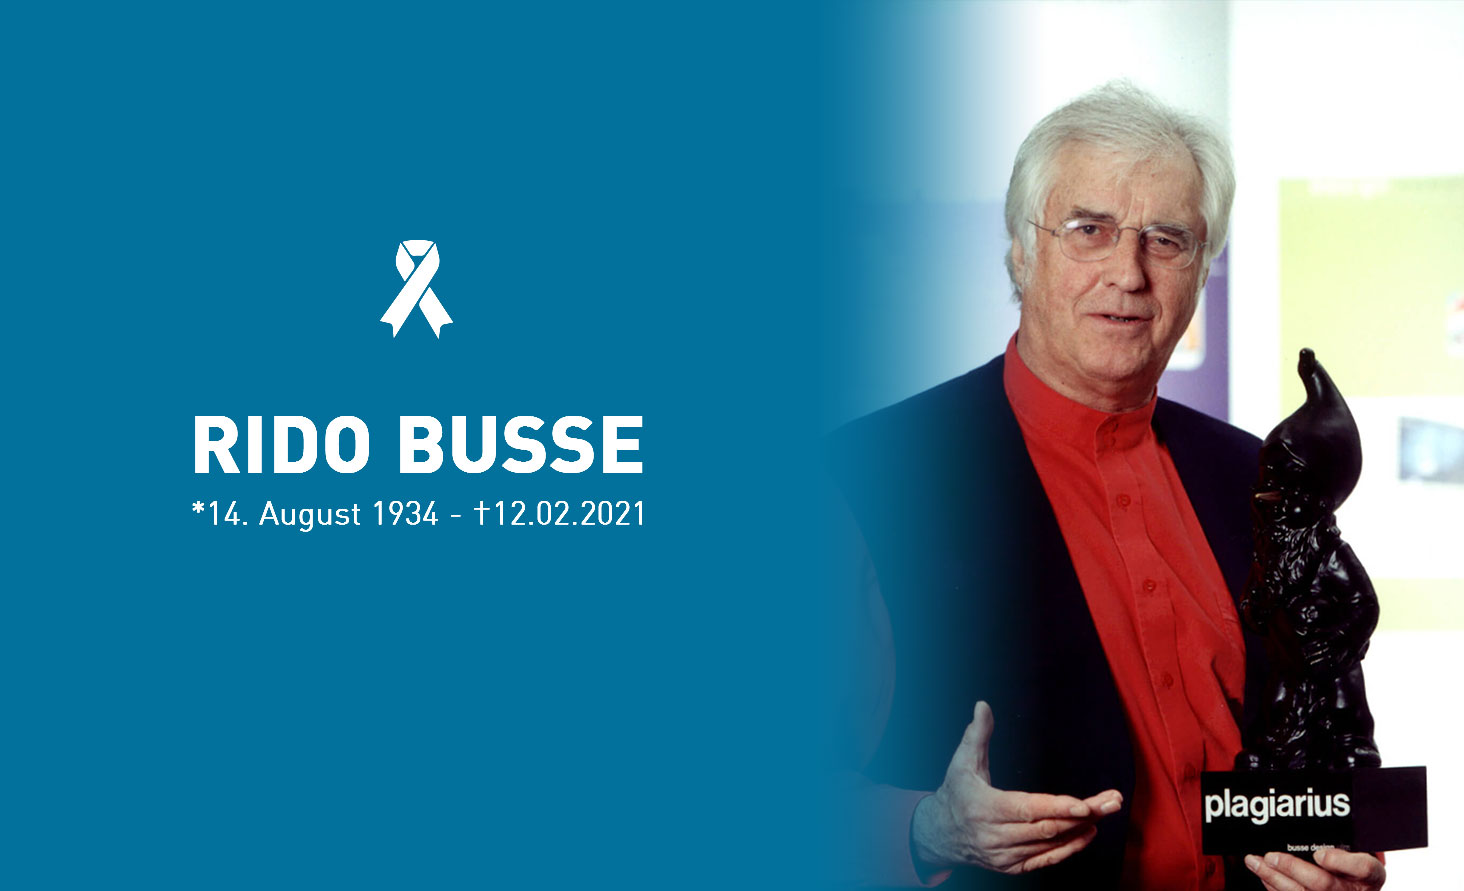 Gedenktribut an Rido Busse mit seinem Porträt und einem weißen Bandsymbol, das seine Lebensdaten vom 14. August 1934 bis zum 12. Februar 2021 zeigt. Rido Busse hält den Plagiarius-Preis.